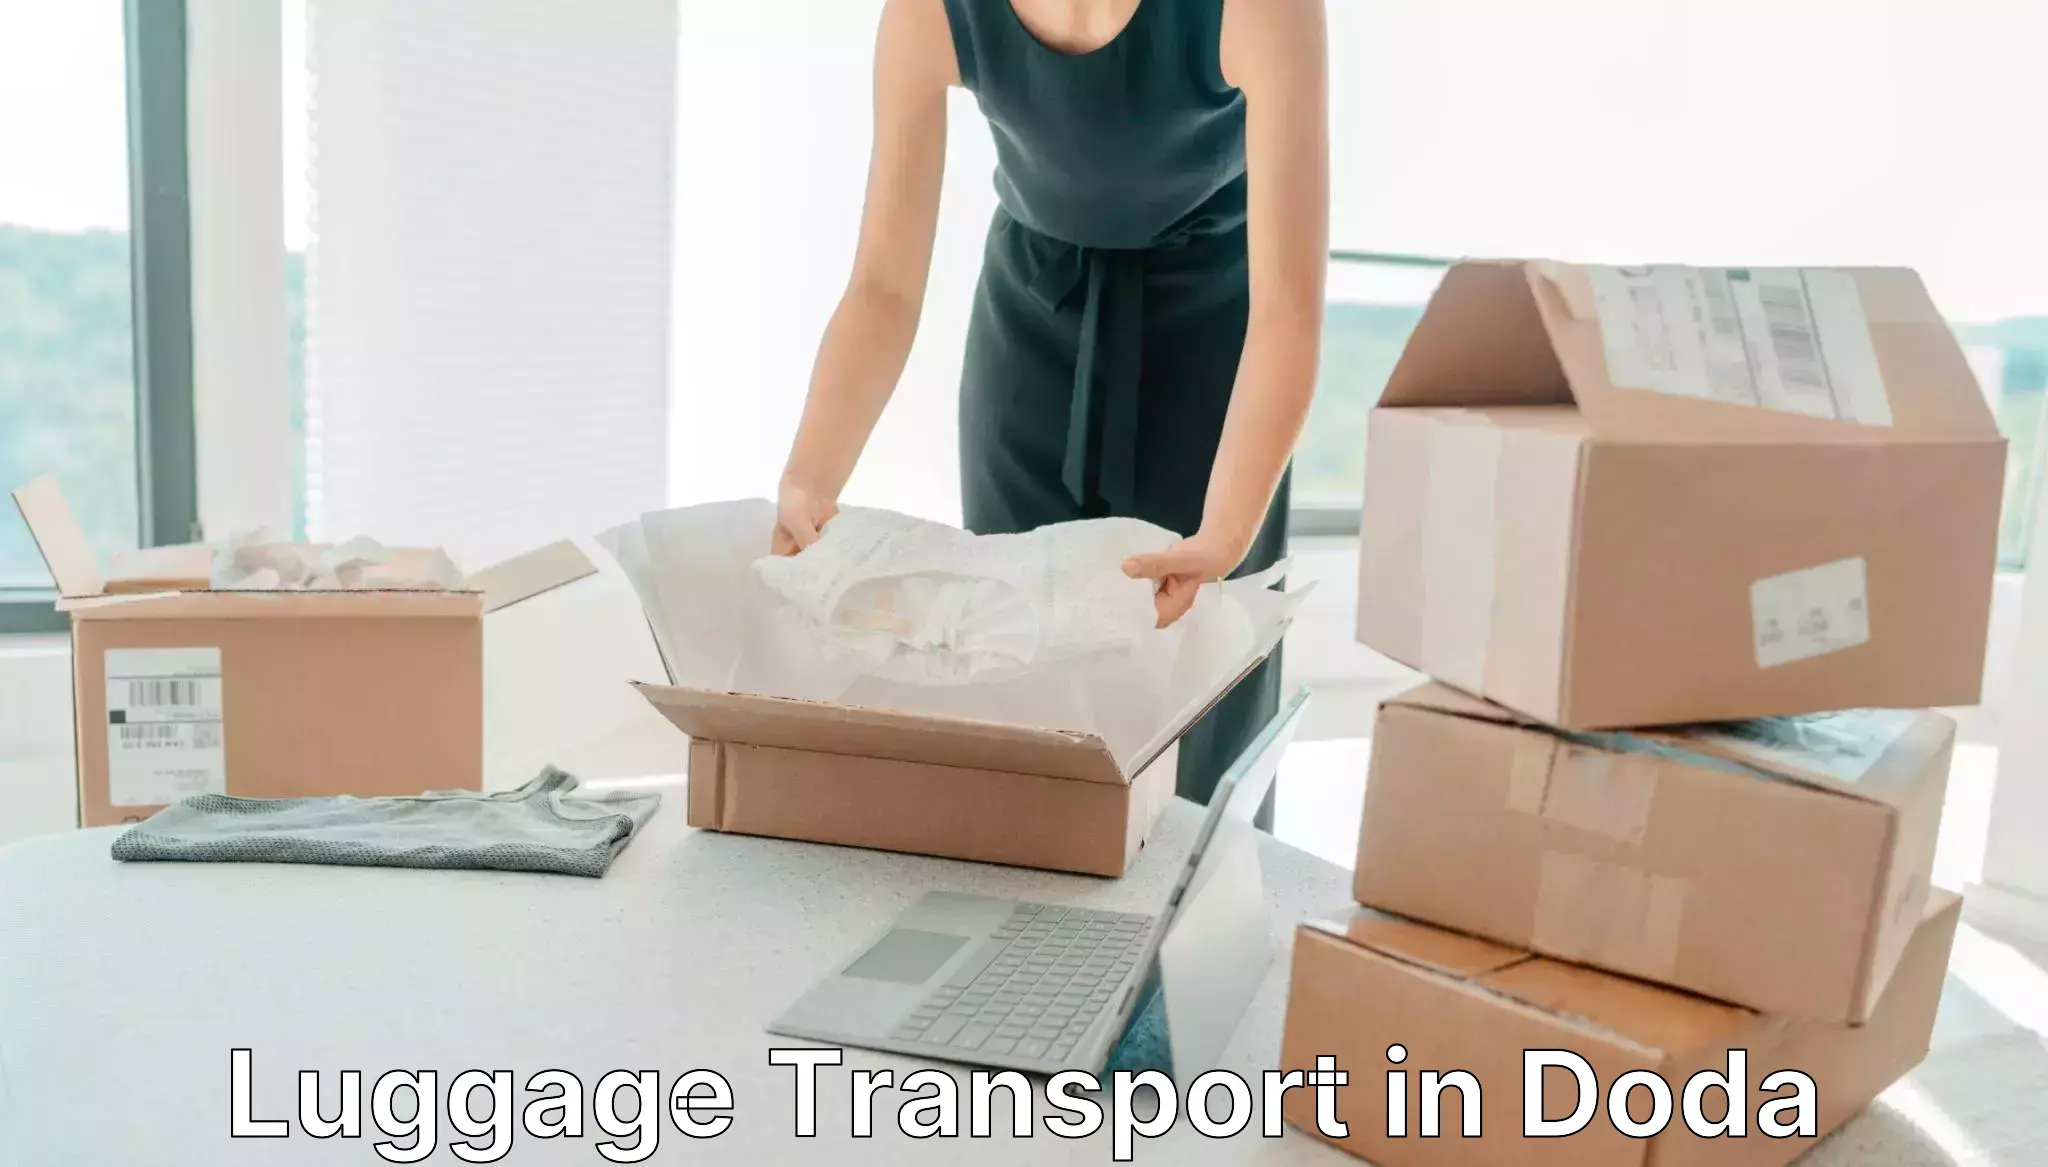 Baggage transport network in Doda